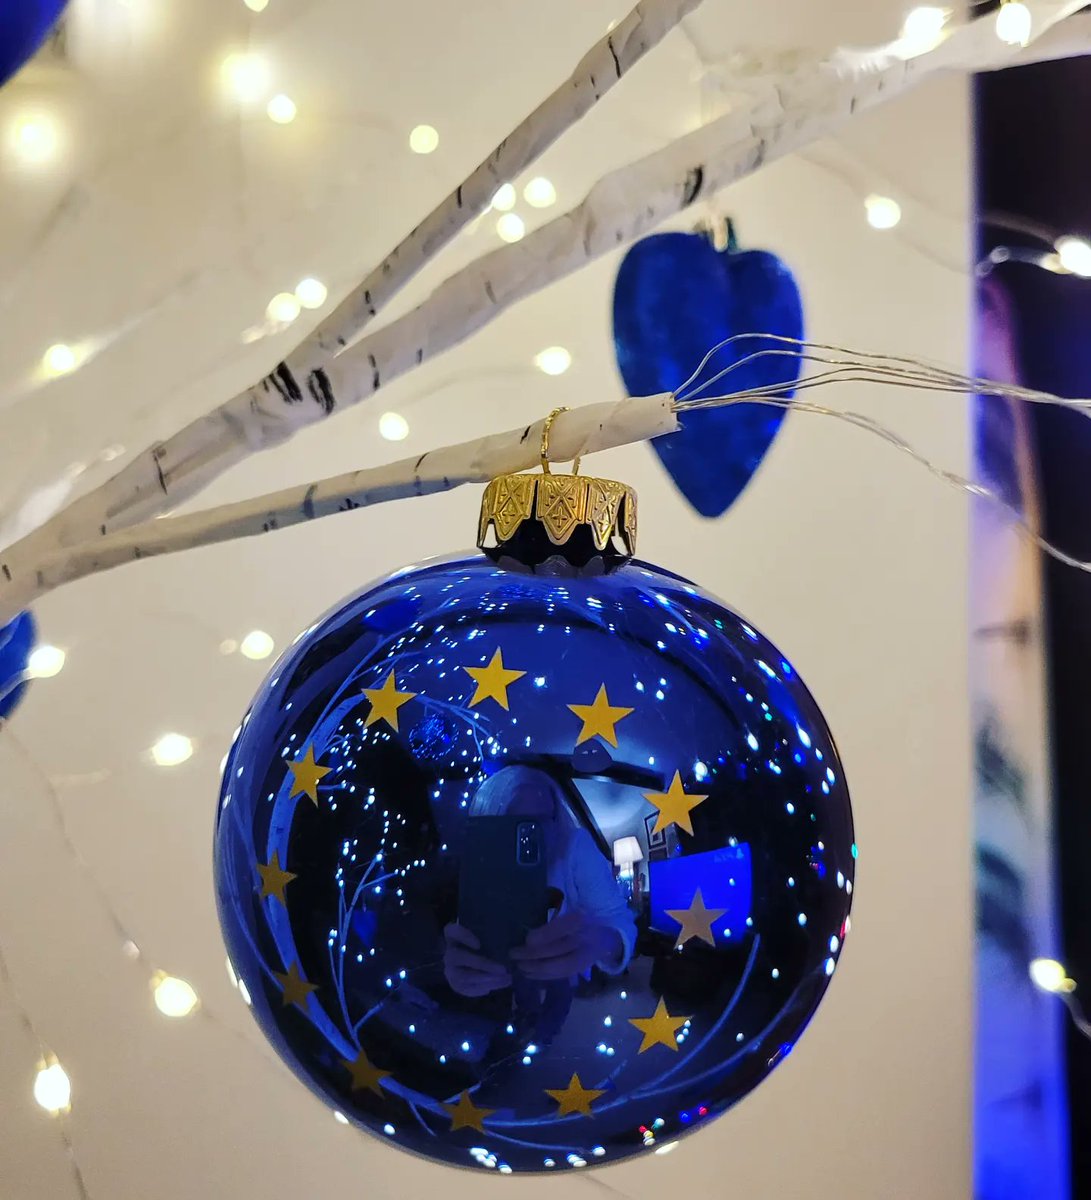 It's a blue Christmas chez moi! 
😊💙🎄🇪🇺 #BlueChristmas #TheFutureisEurope